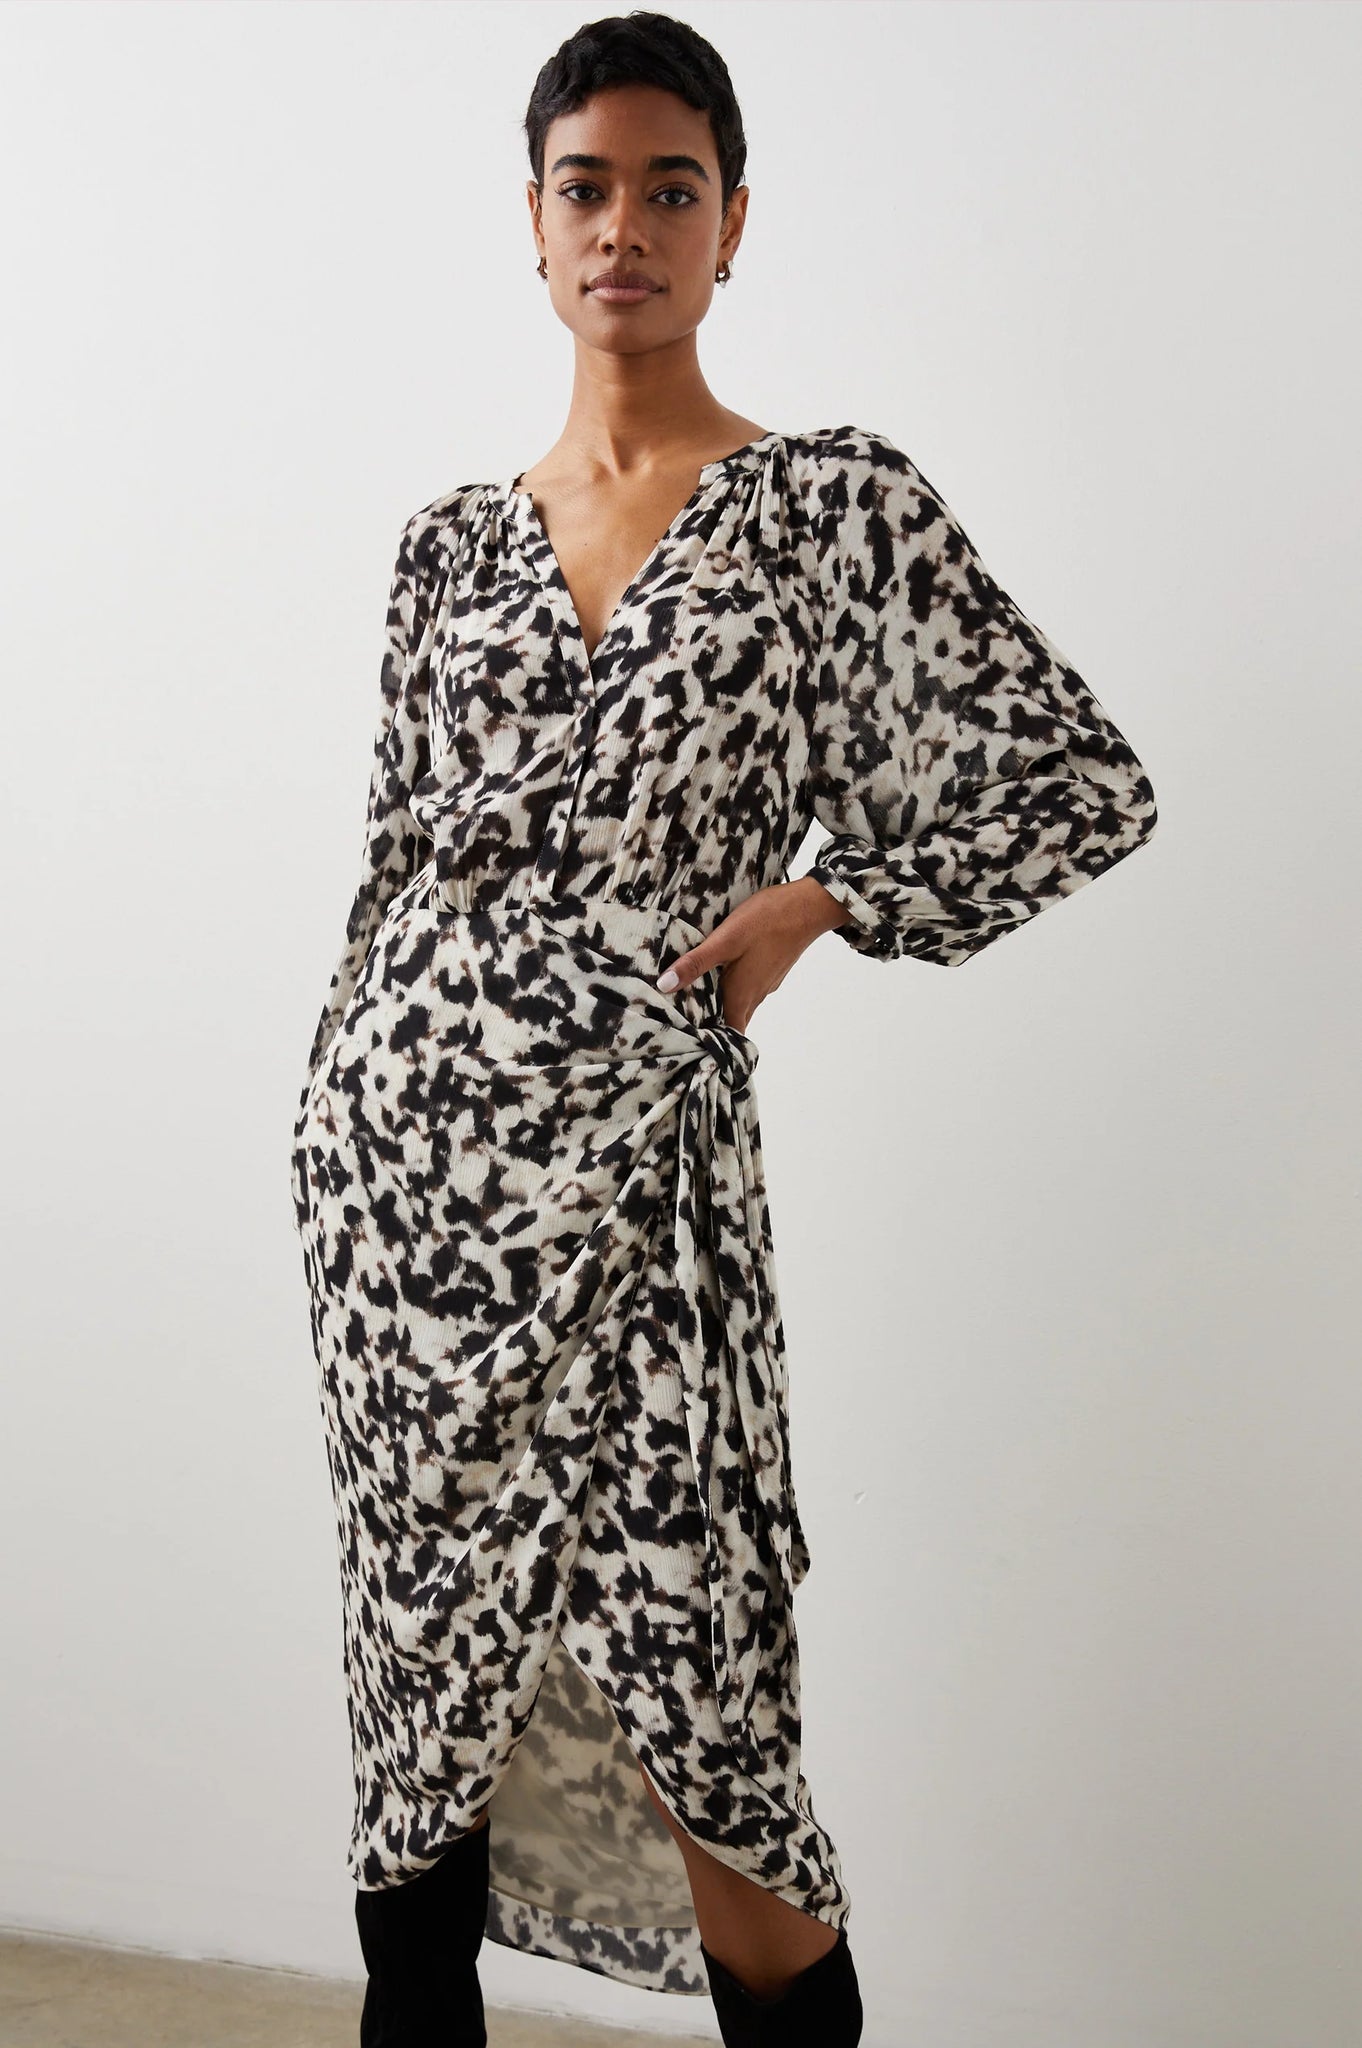 Tyra Blurred Cheetah  Dress